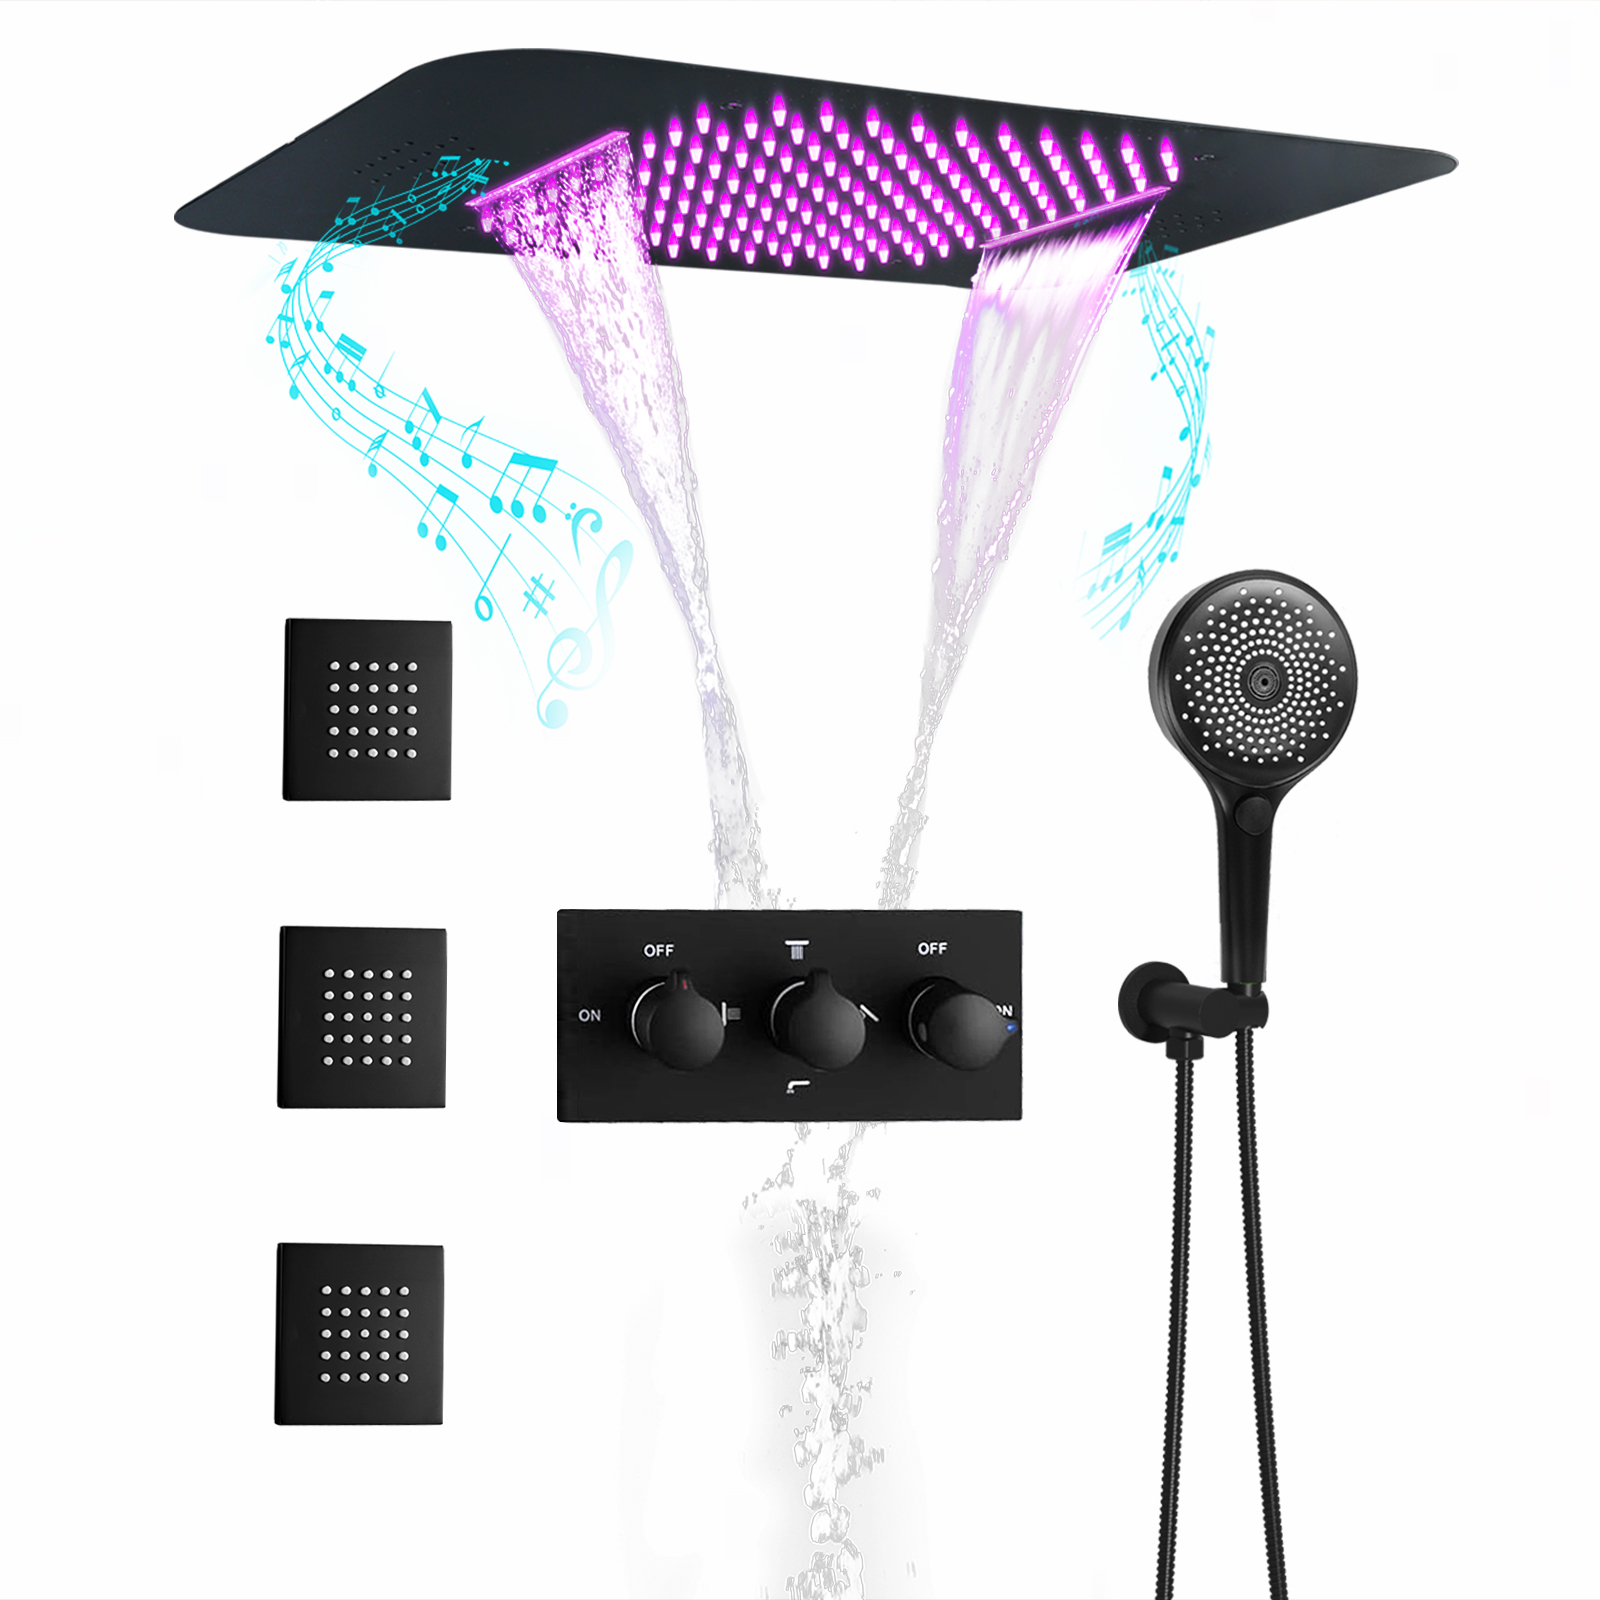 نظام شلال مياه الأمطار LED للحمام باللون الأسود الداكن ودرجة حرارة ثابتة ونظام صنبور مياه الدش المختلط طقم نفاث